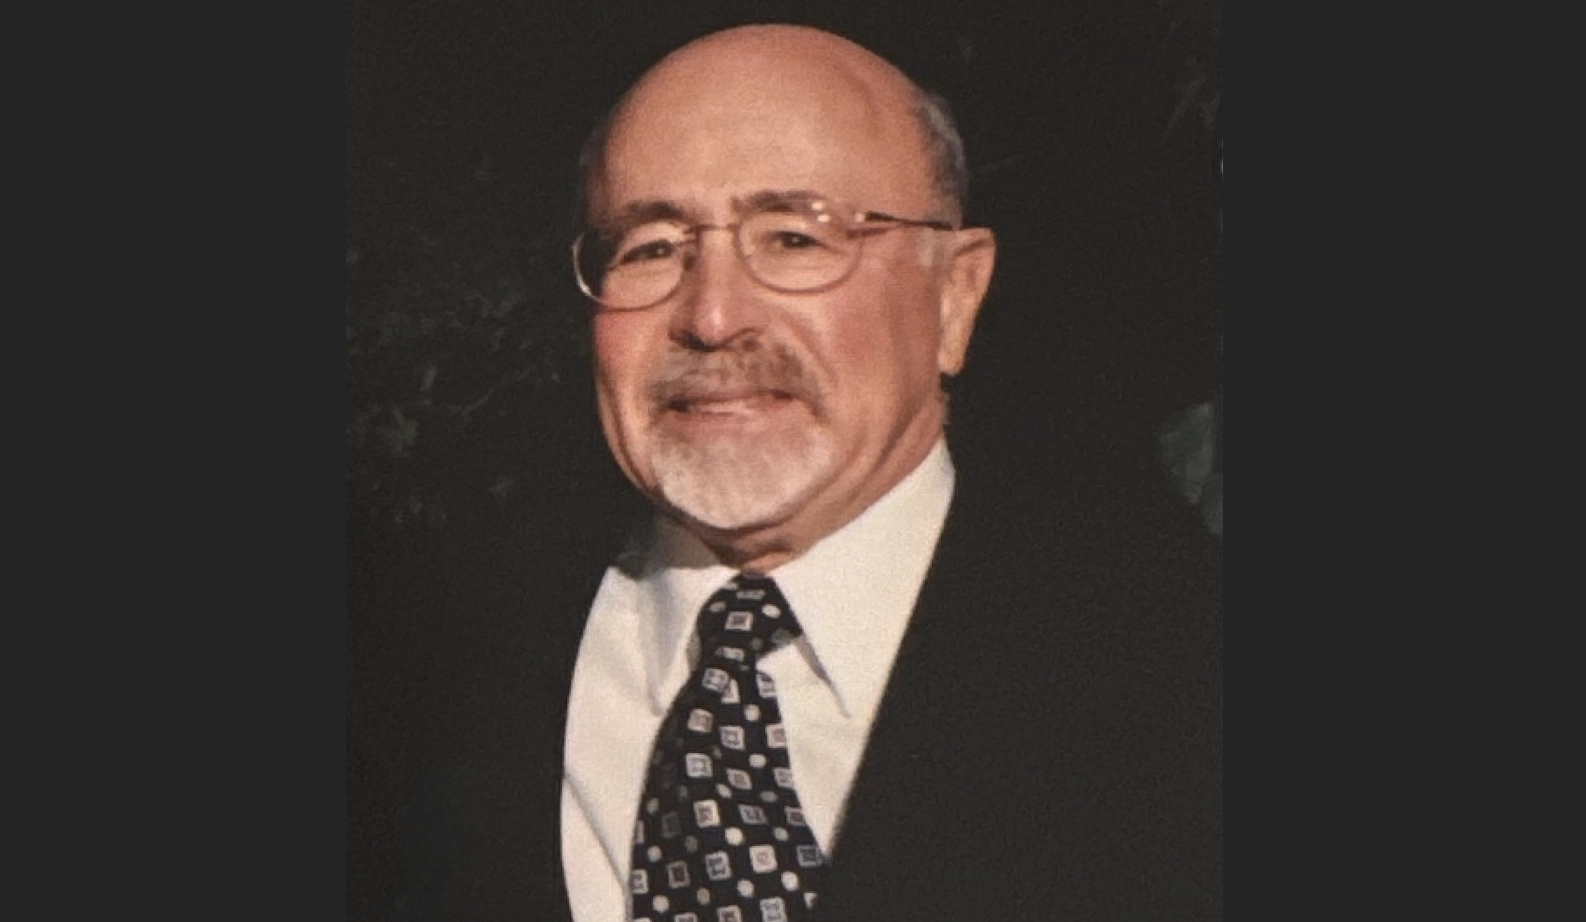 Remembering Emeritus Professor Bill Goldfarb